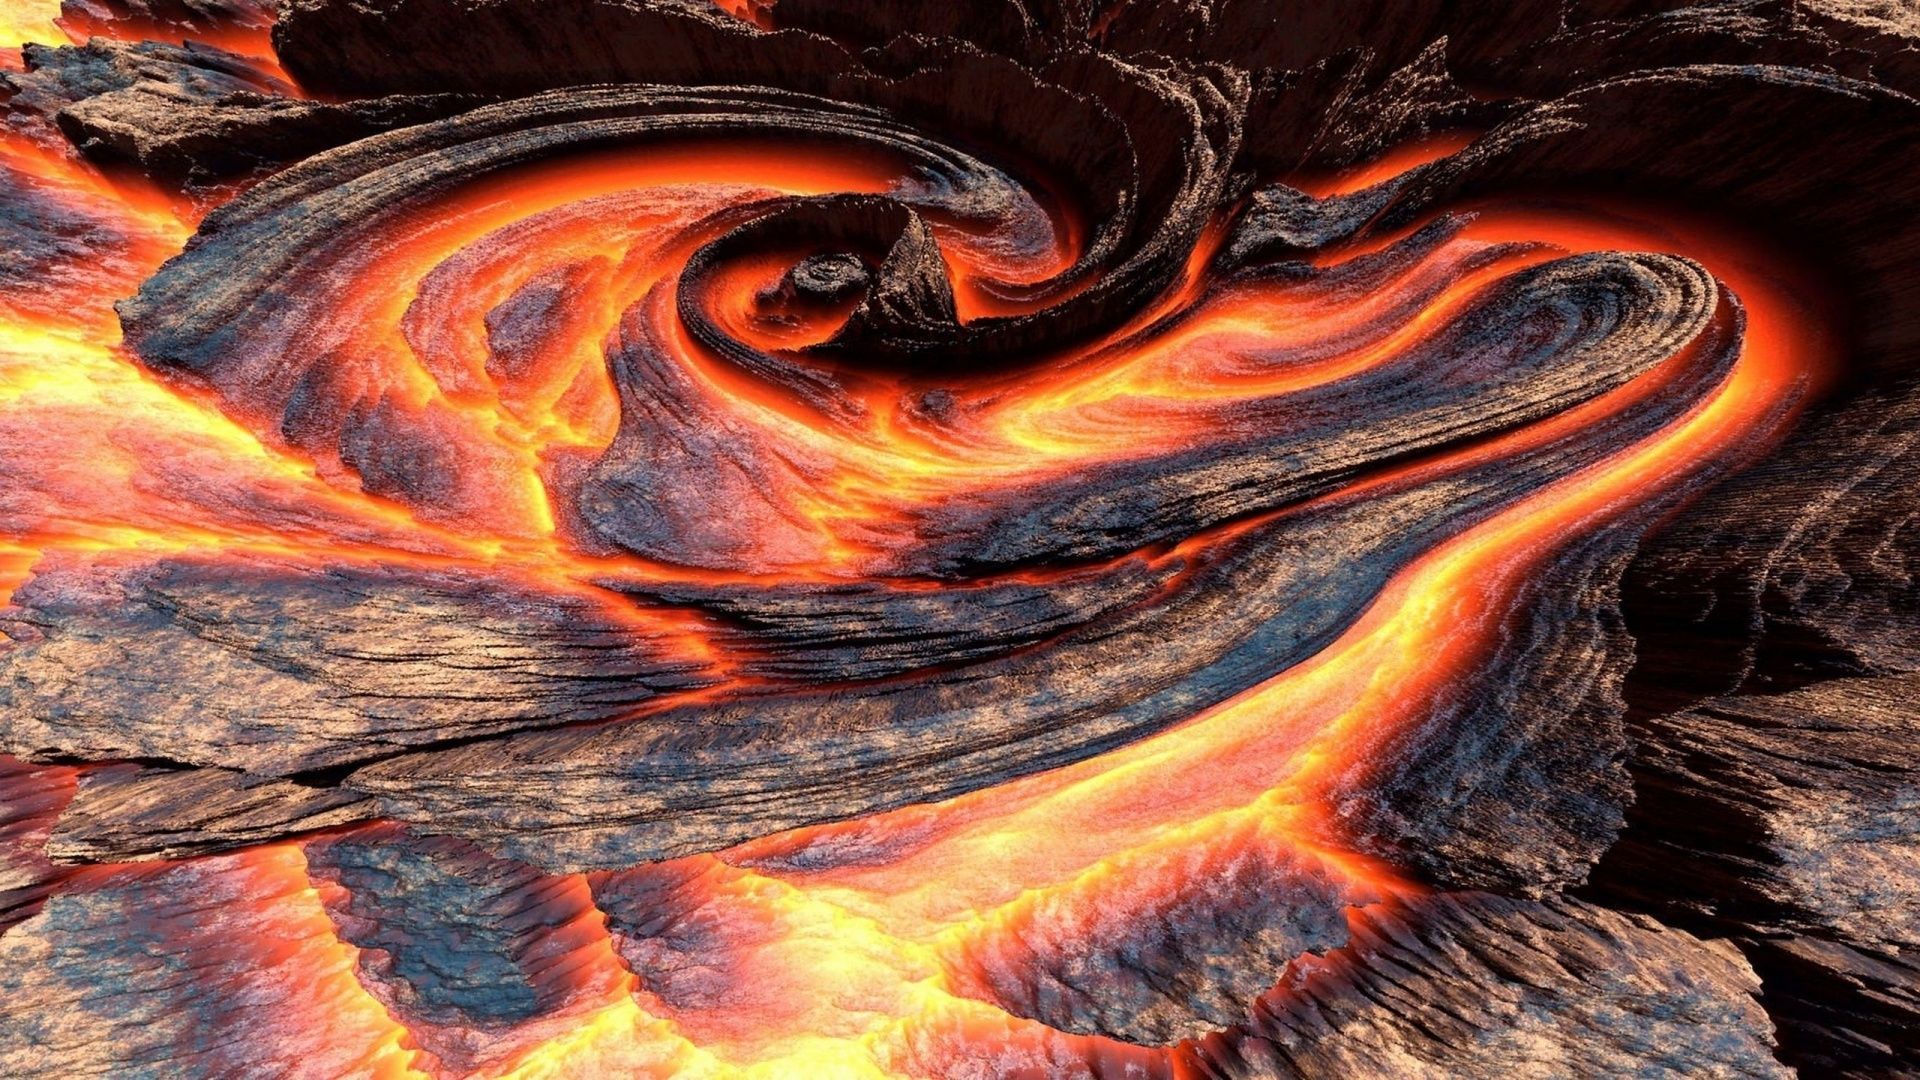 تصویر هنری واقعی خیره کننده  از حرکت گدازه های آتشفشانی 